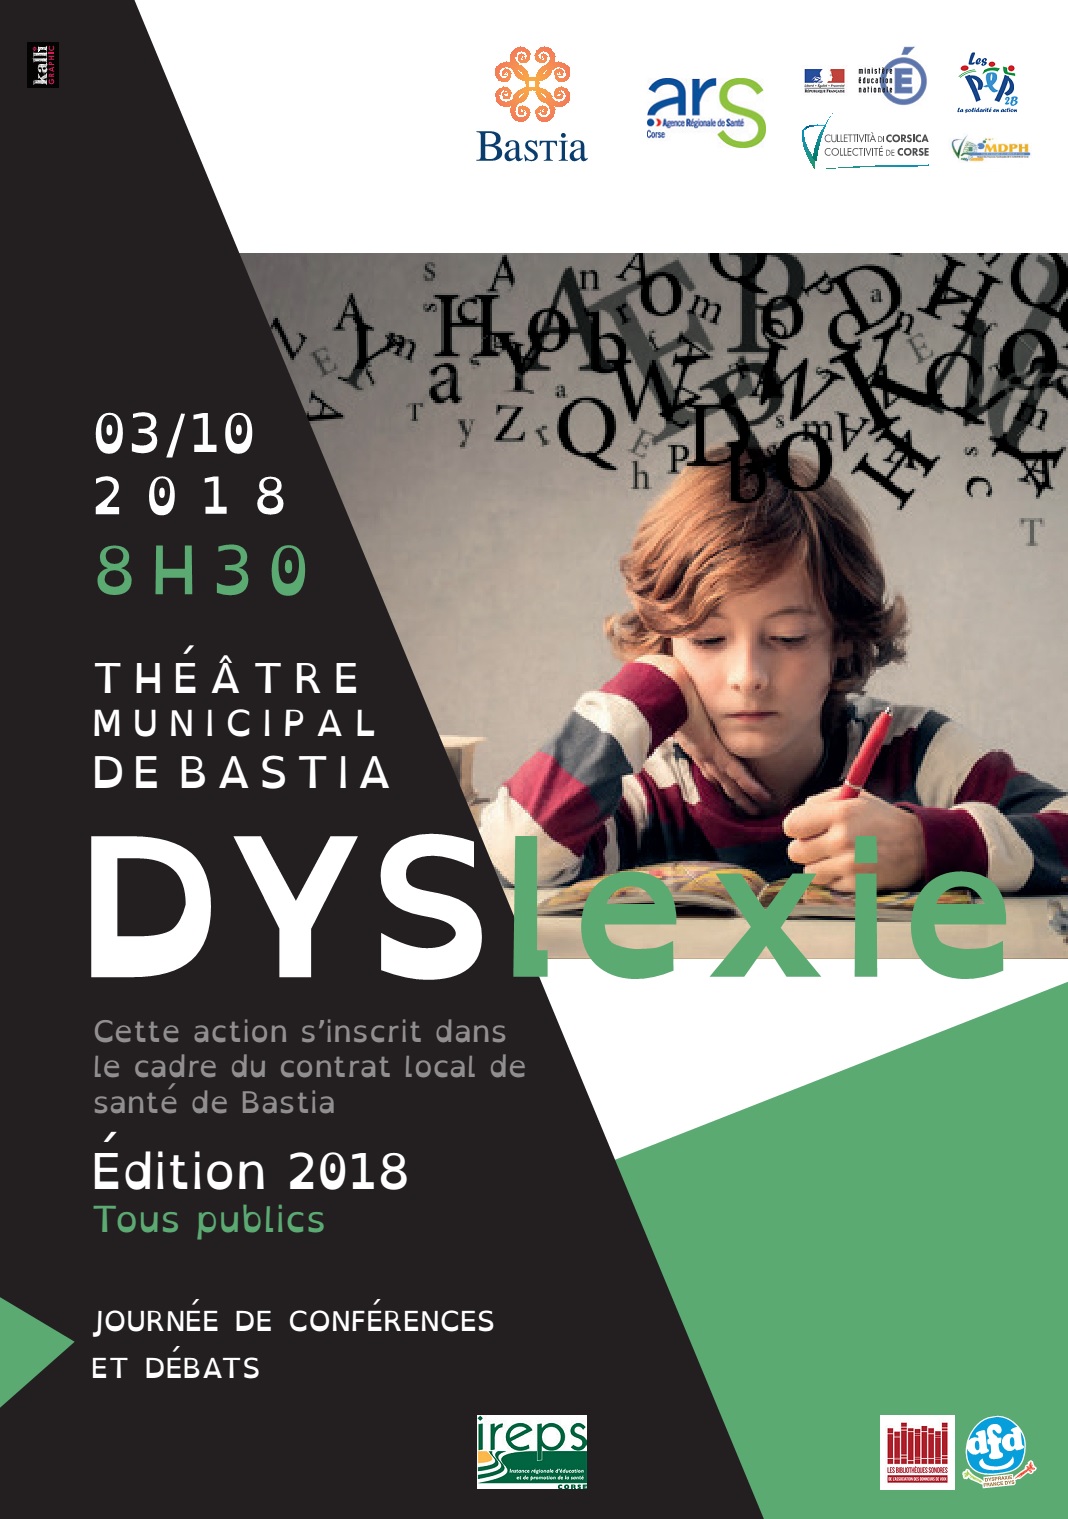 Bastia : Un colloque dédié à la dyslexie